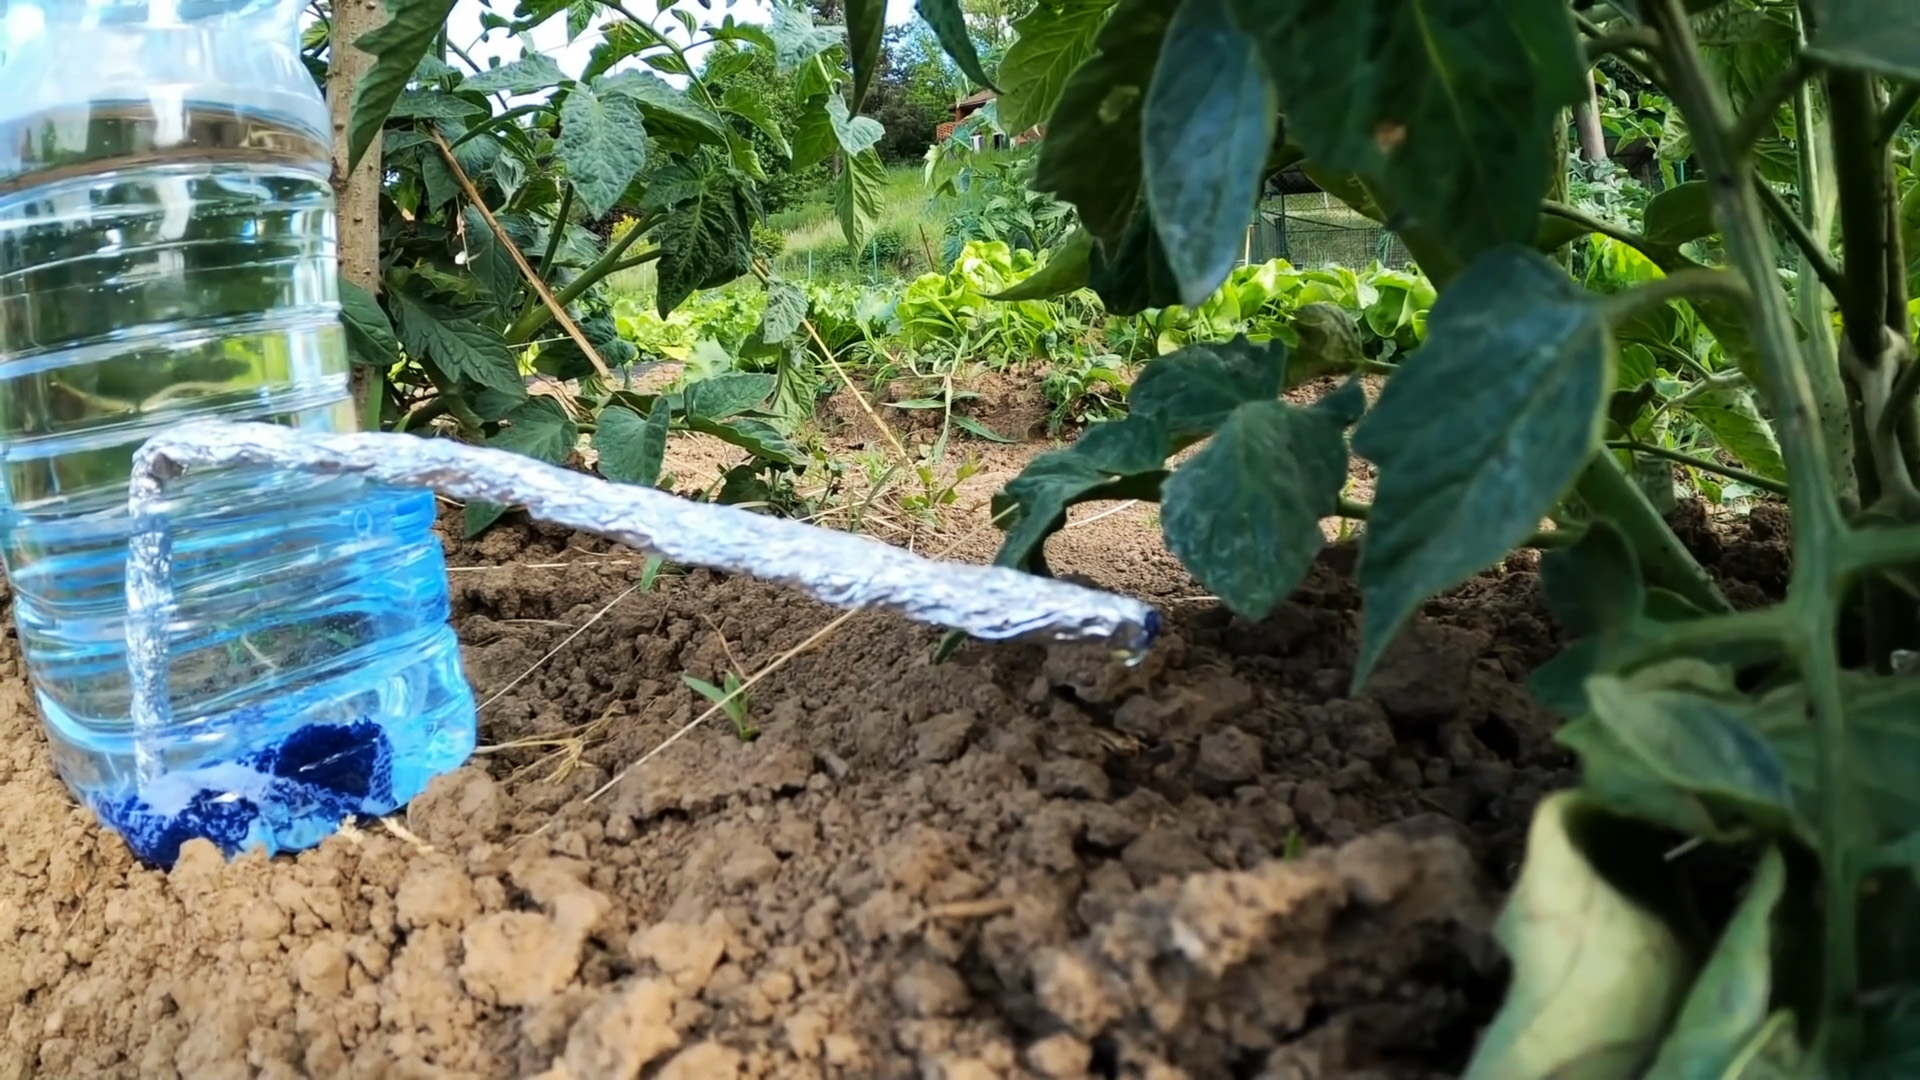 Капельная система полива из ПЭТ бутылок - сэкономит воду и силы на полив, повысит урожай